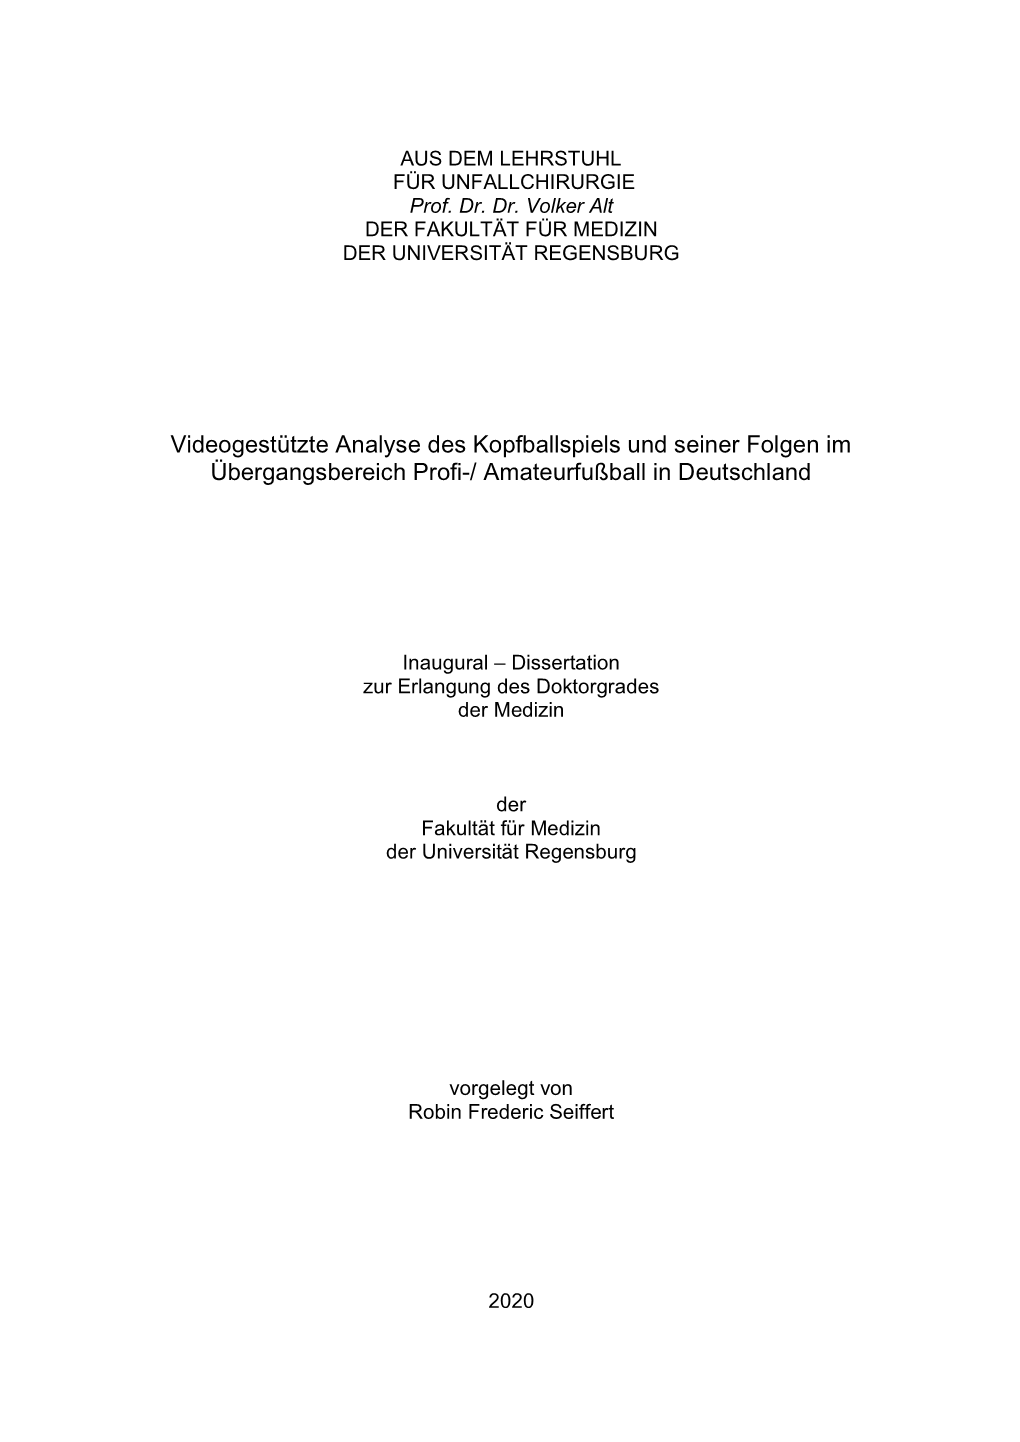 Dissertation Zur Erlangung Des Doktorgrades Der Medizin